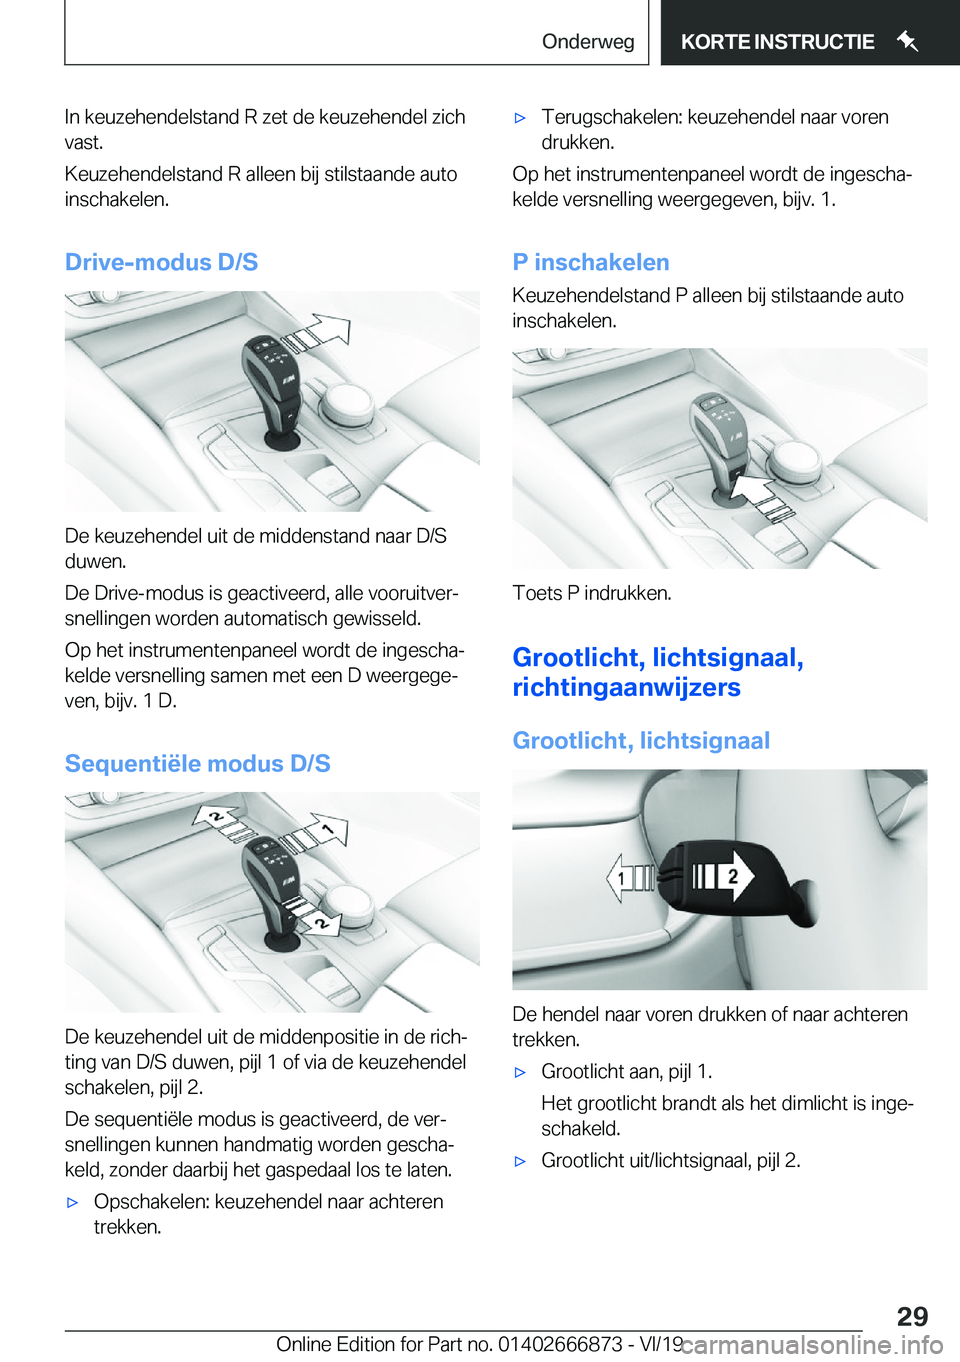 BMW X4 M 2020  Instructieboekjes (in Dutch) �I�n��k�e�u�z�e�h�e�n�d�e�l�s�t�a�n�d��R��z�e�t��d�e��k�e�u�z�e�h�e�n�d�e�l��z�i�c�h�v�a�s�t�.
�K�e�u�z�e�h�e�n�d�e�l�s�t�a�n�d��R��a�l�l�e�e�n��b�i�j��s�t�i�l�s�t�a�a�n�d�e��a�u�t�o �i�n�s